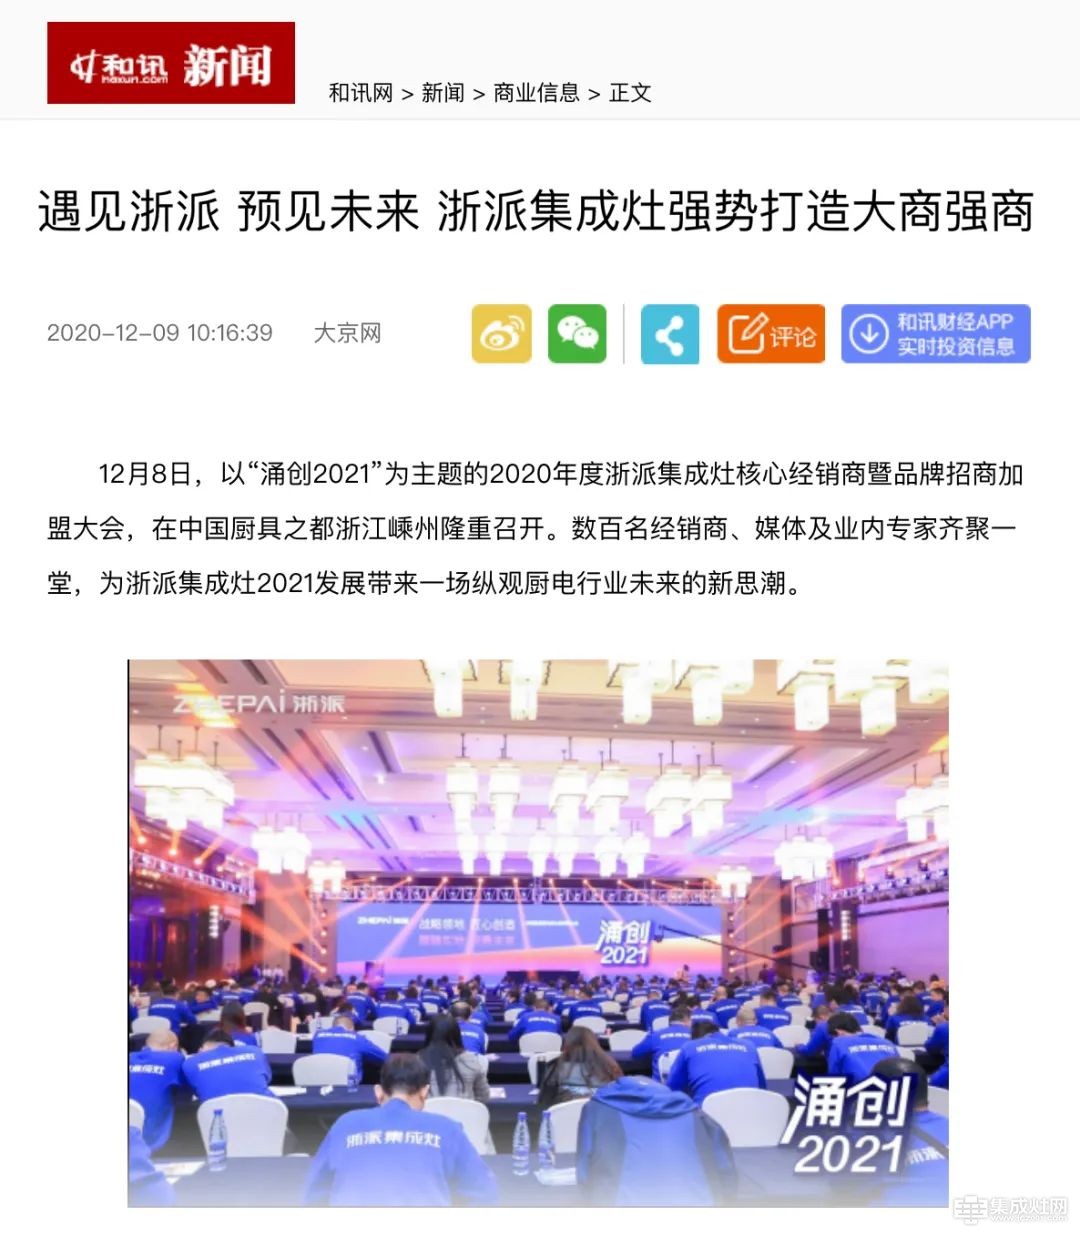 各大媒体争相报道“涌创2021”浙派核心经销商大会